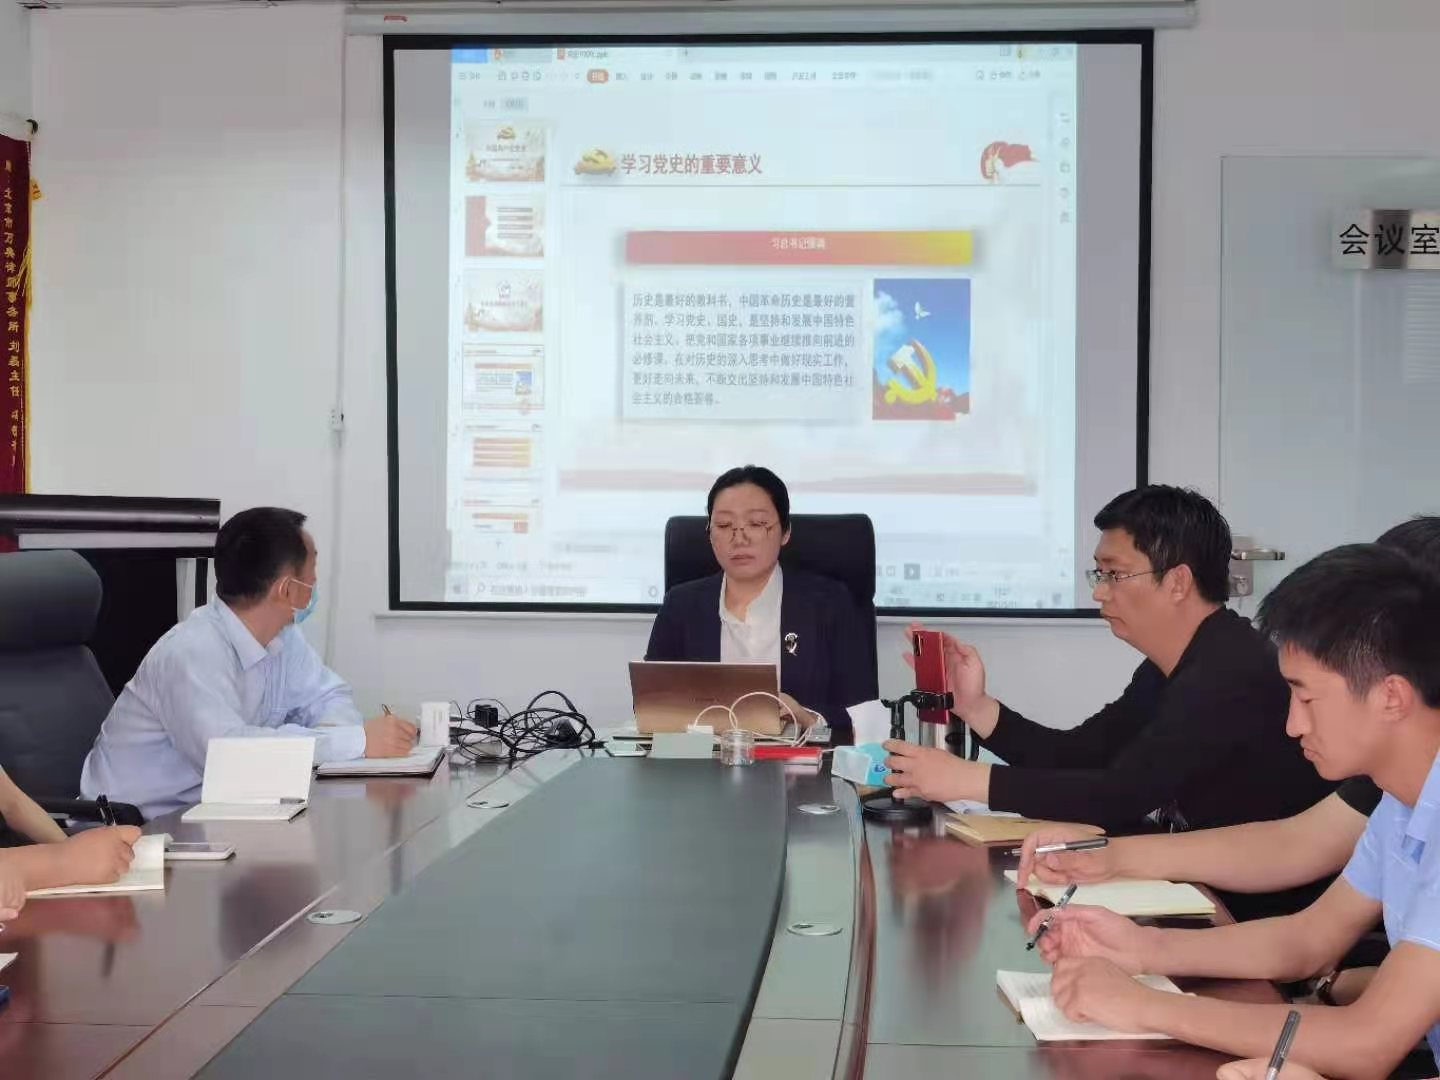 北京万典律师事务所关于突出性问题专项整顿系列活动